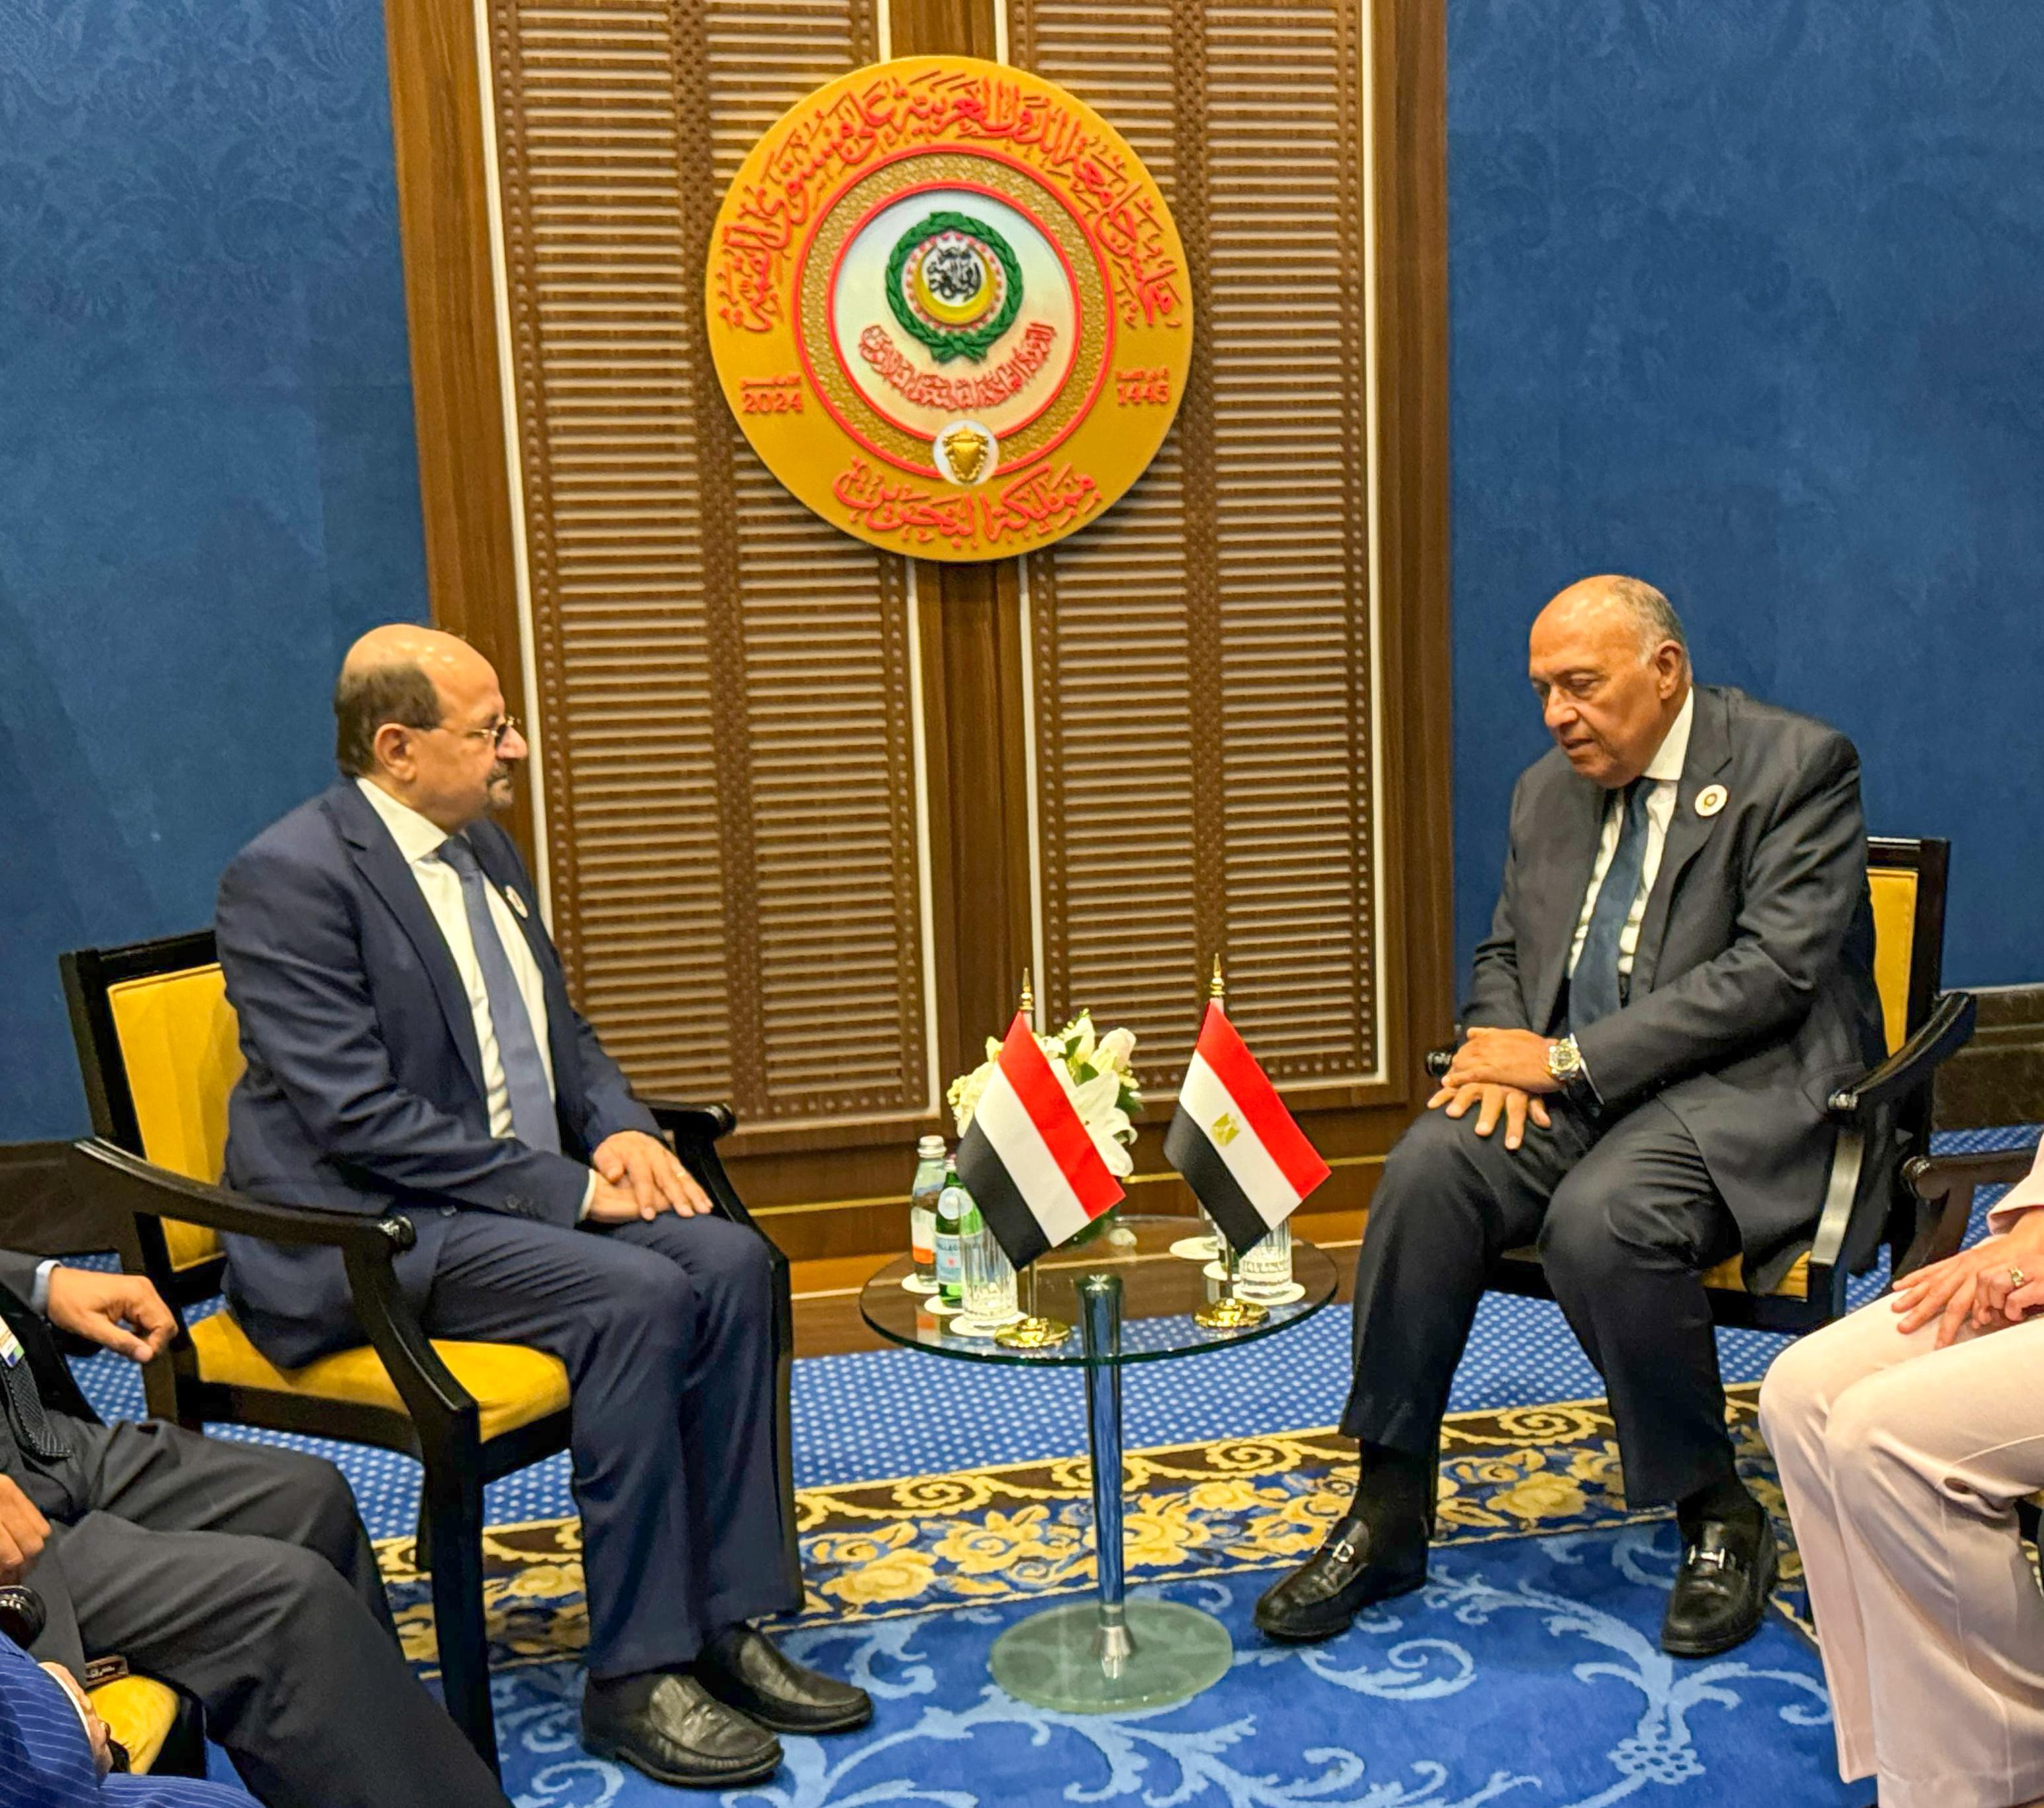 وزير الخارجية يثمن موقف مصر الثابت والداعم للحكومة والشعب اليمني